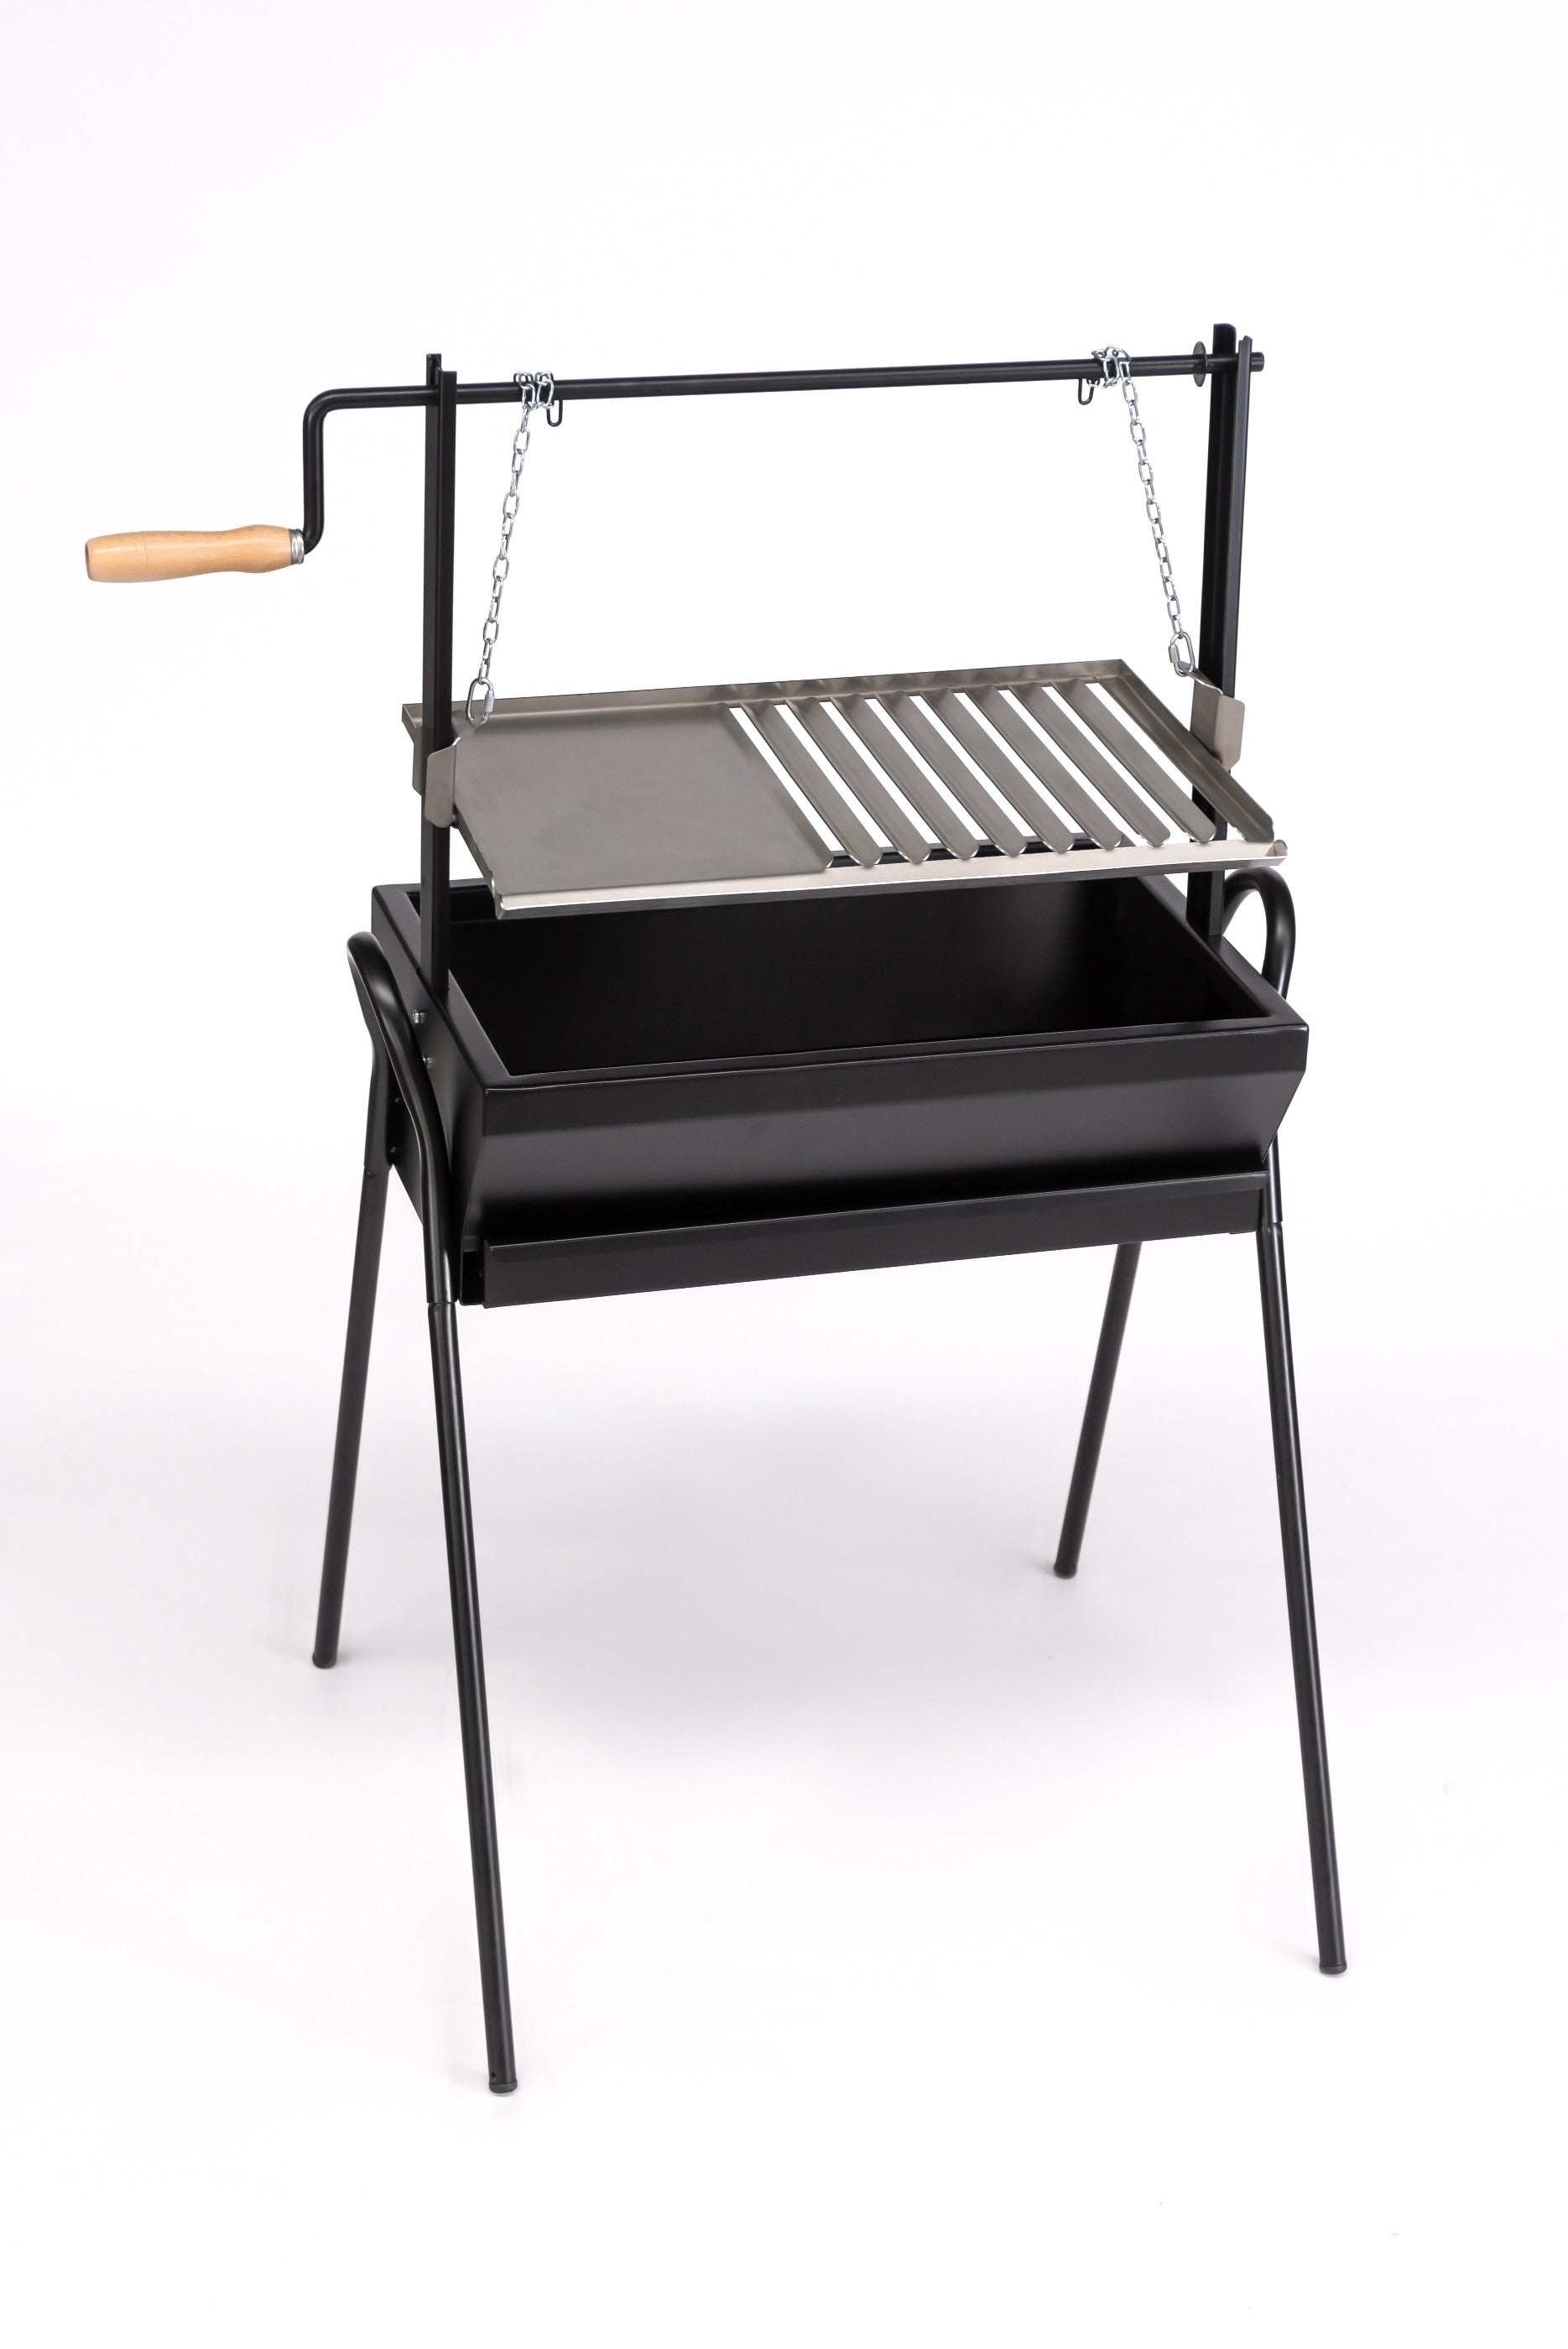 Barbecue / grill argentino